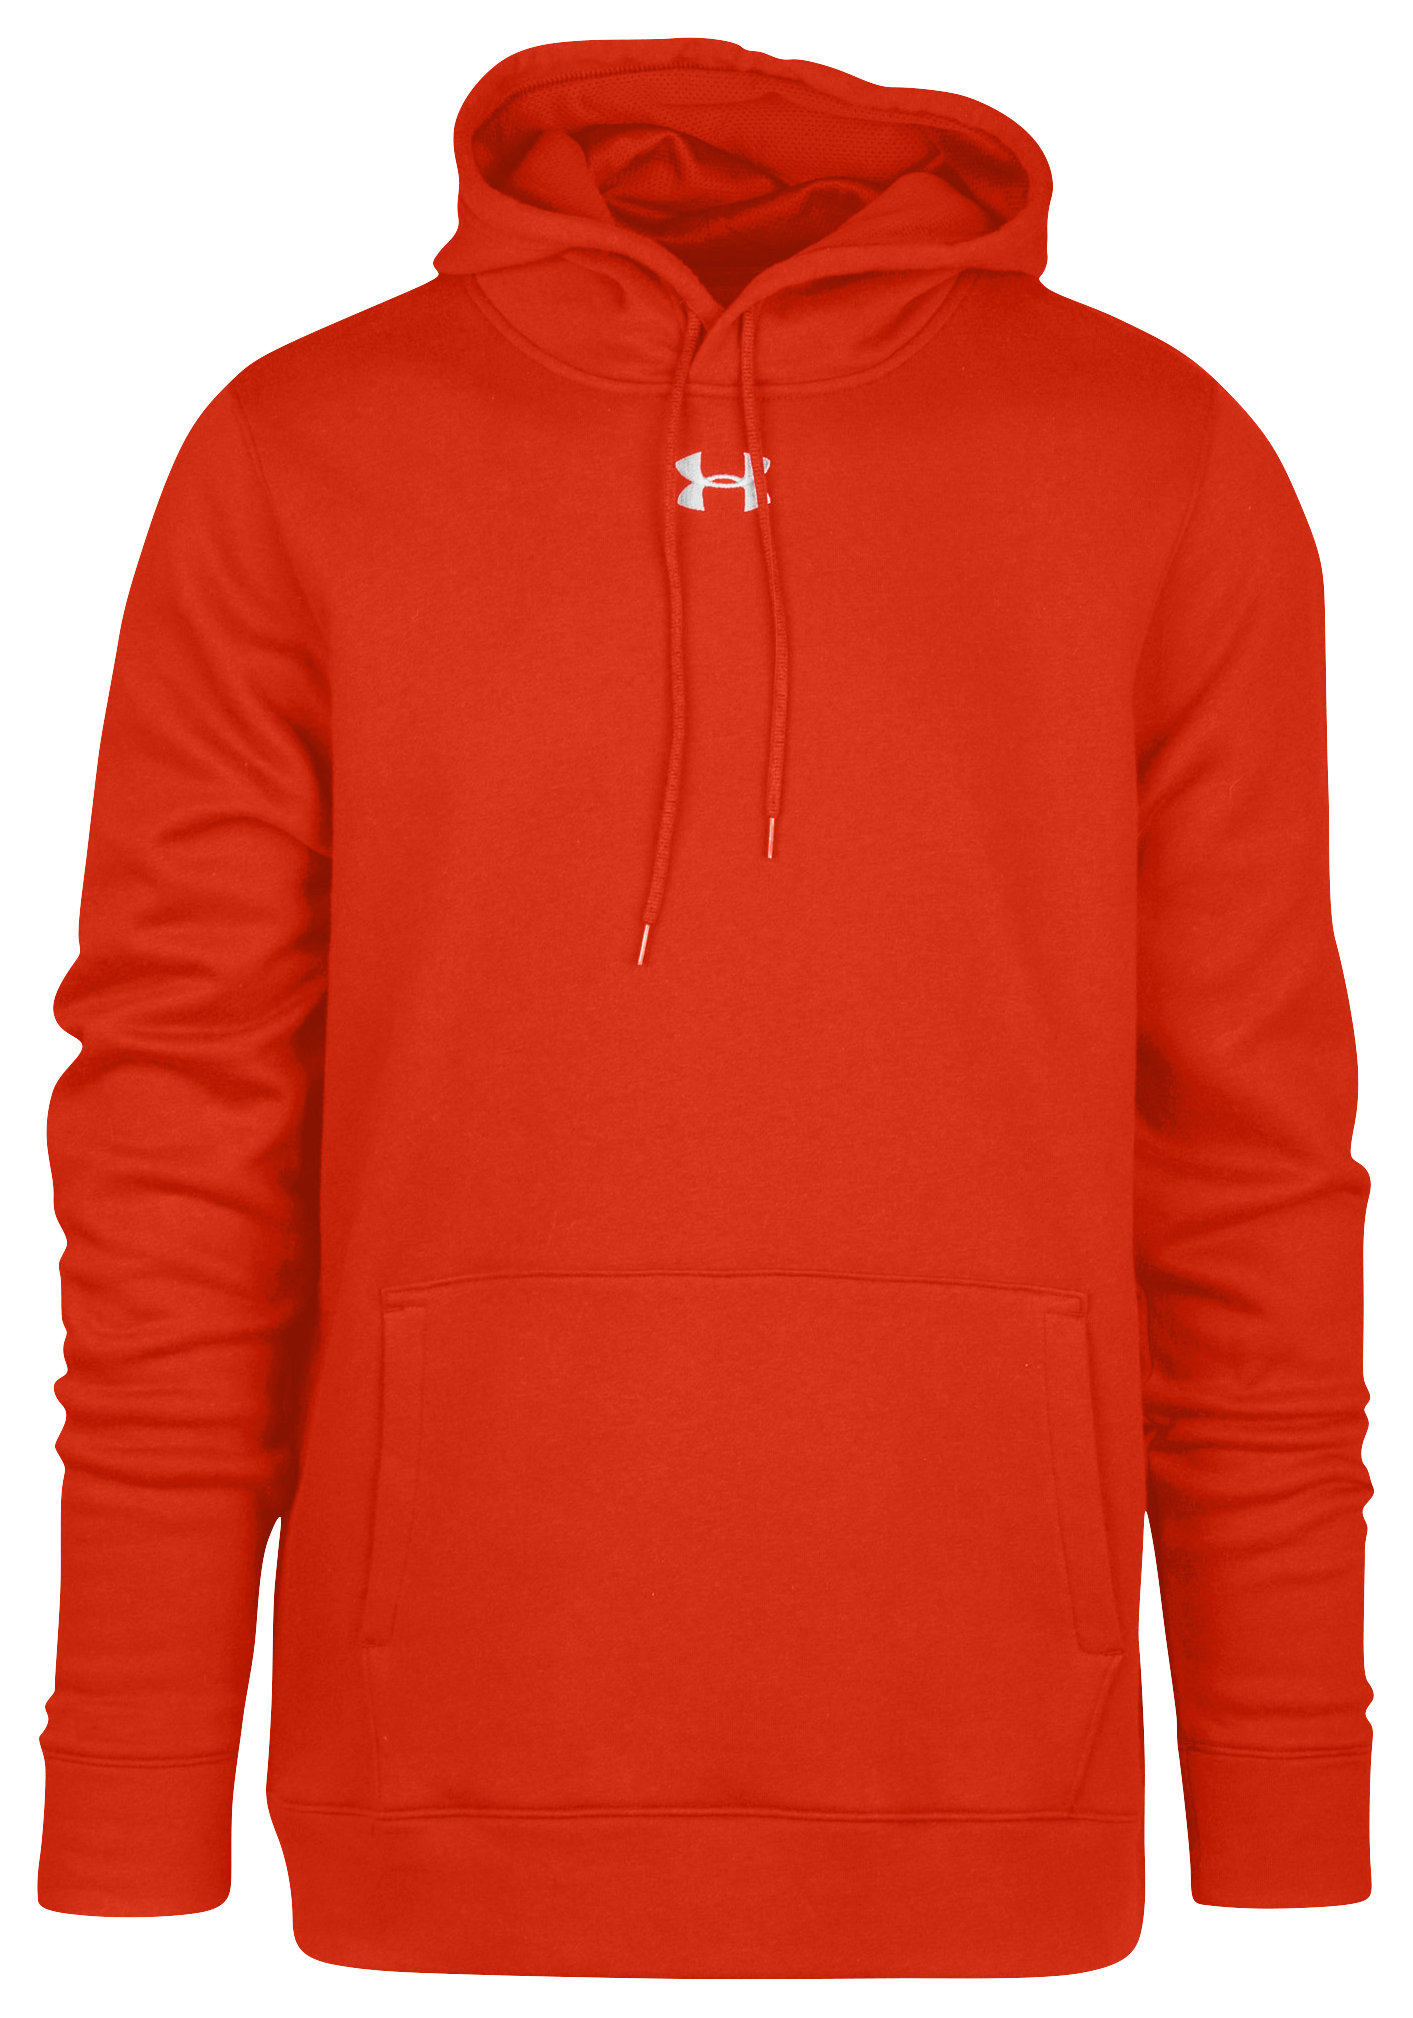 red under armor hoodie